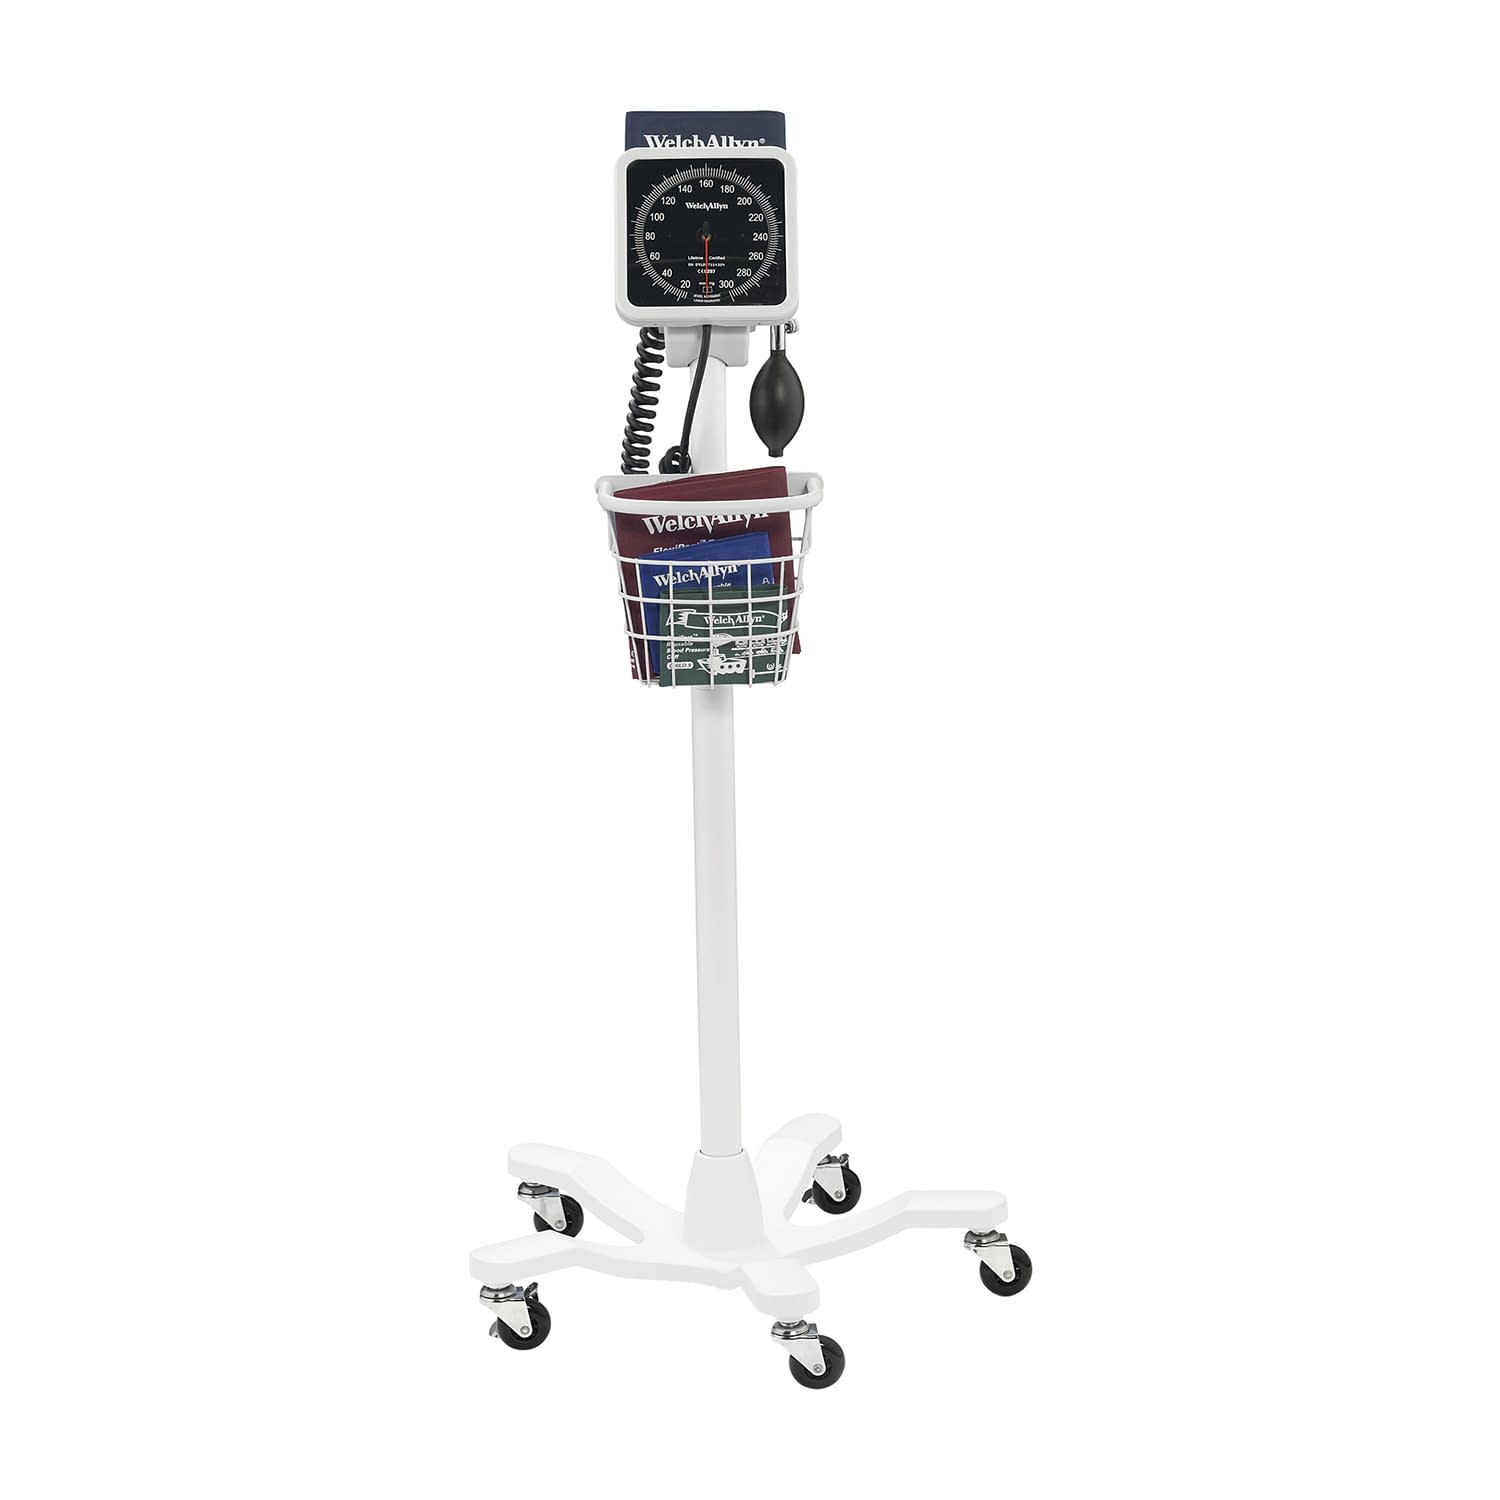 (02-5794-02)タイコス血圧計スタンド型 7670-10 ﾀｲｺｽｹﾂｱﾂｹｲｽﾀﾝﾄﾞｶﾞﾀ【1台単位】【2019年カタログ商品】